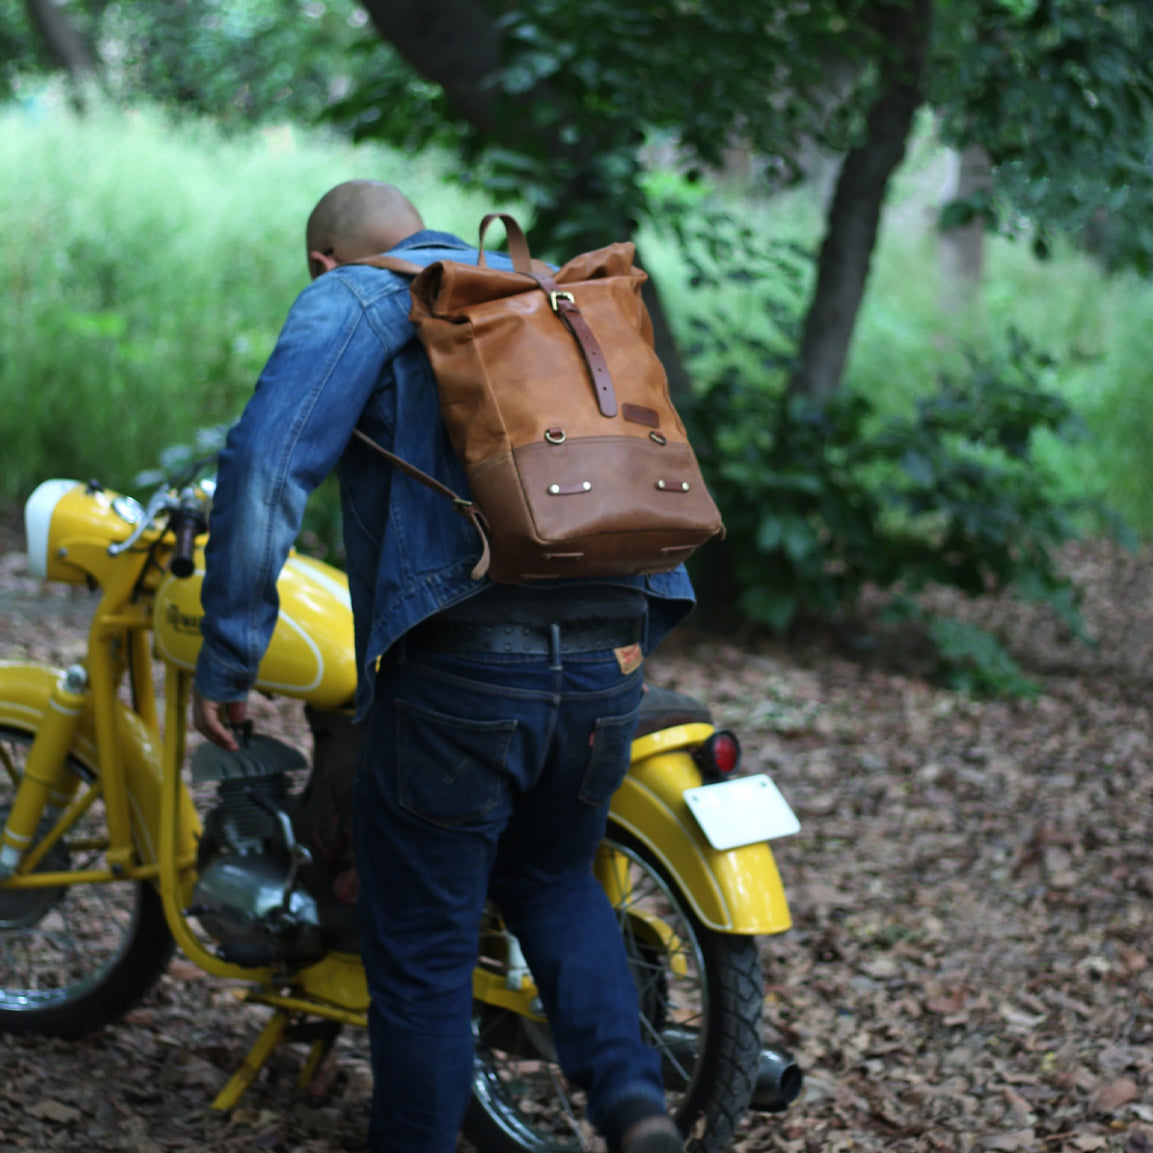 Trip Machine Backpack Pannier Classic - vintage tan. Klassische Motorrad-Gepäcktasche aus hellbraunen Leder im Retro-/Vintage-Stil, mit 15 Liter Volumen perfekt für einen Mehr-Tages Ausflug. Einfaches Montagesystem an nahezu jedem Motorrad möglich.